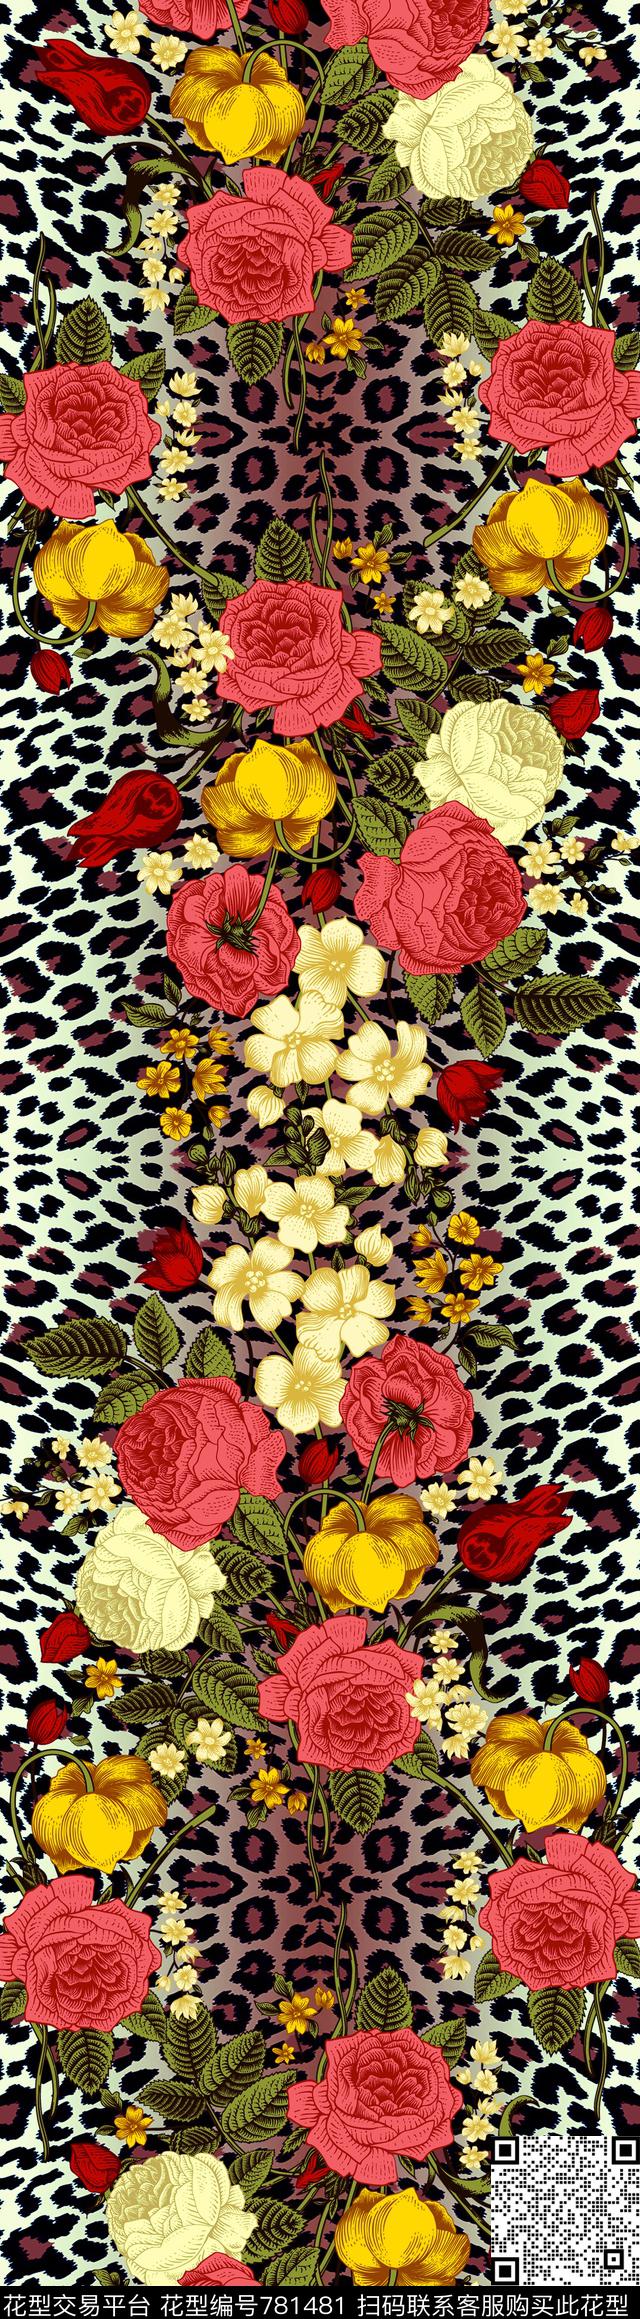 2016047.jpg - 781481 - 动物纹 豹纹 花卉 - 数码印花花型 － 女装花型设计 － 瓦栏